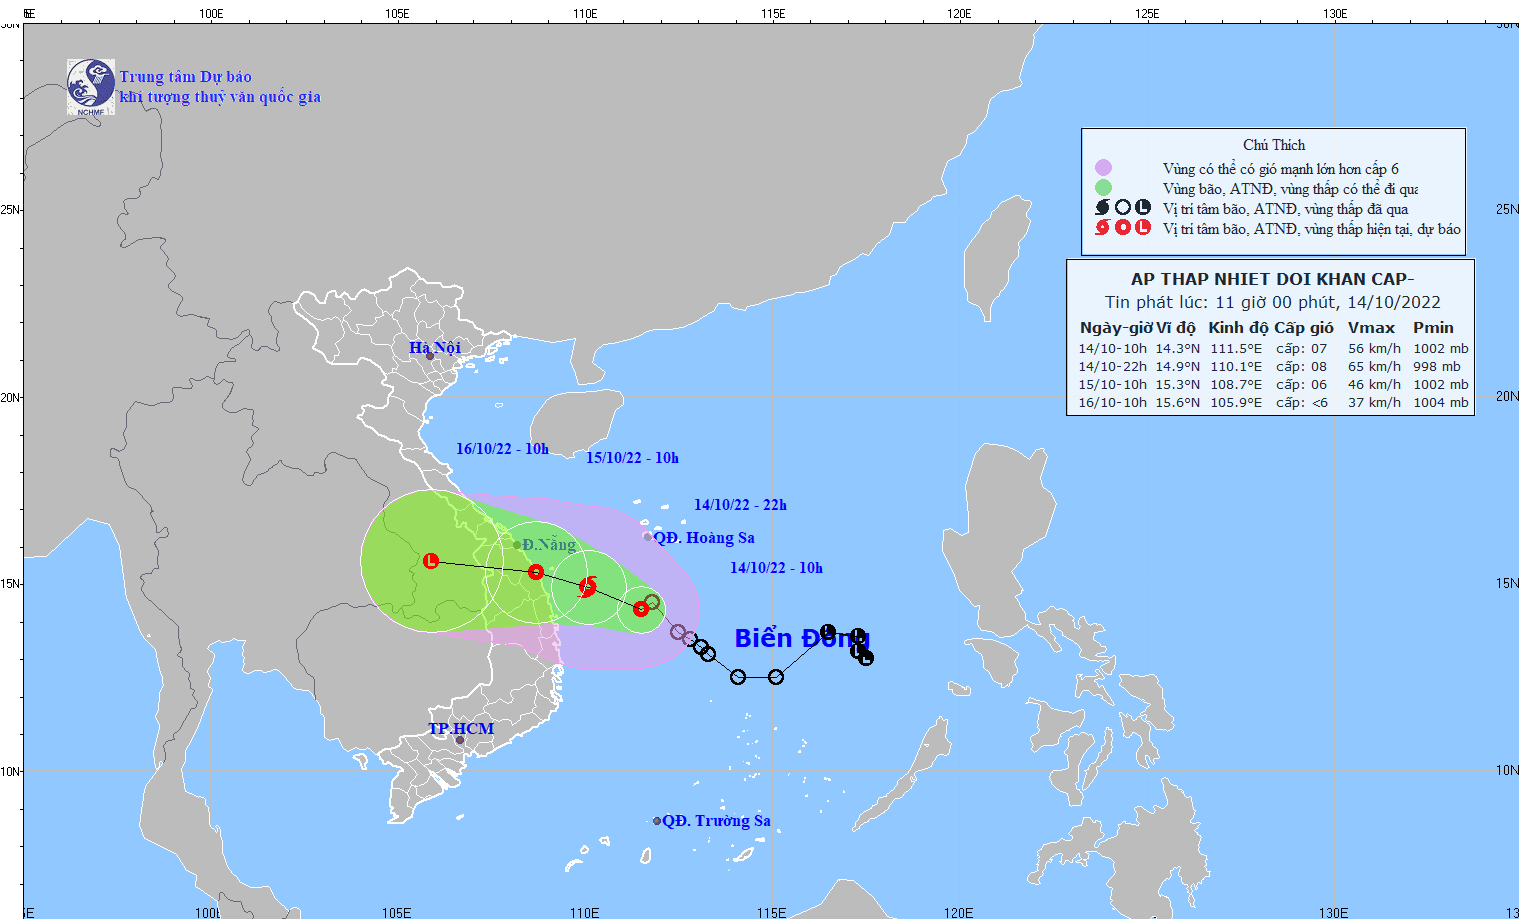 Dự báo: Đêm 14/10 áp thấp nhiệt đới sẽ mạnh lên thành bão; ven biển Thừa Thiên-Huế đến Bình Định gió giật cấp 8-9